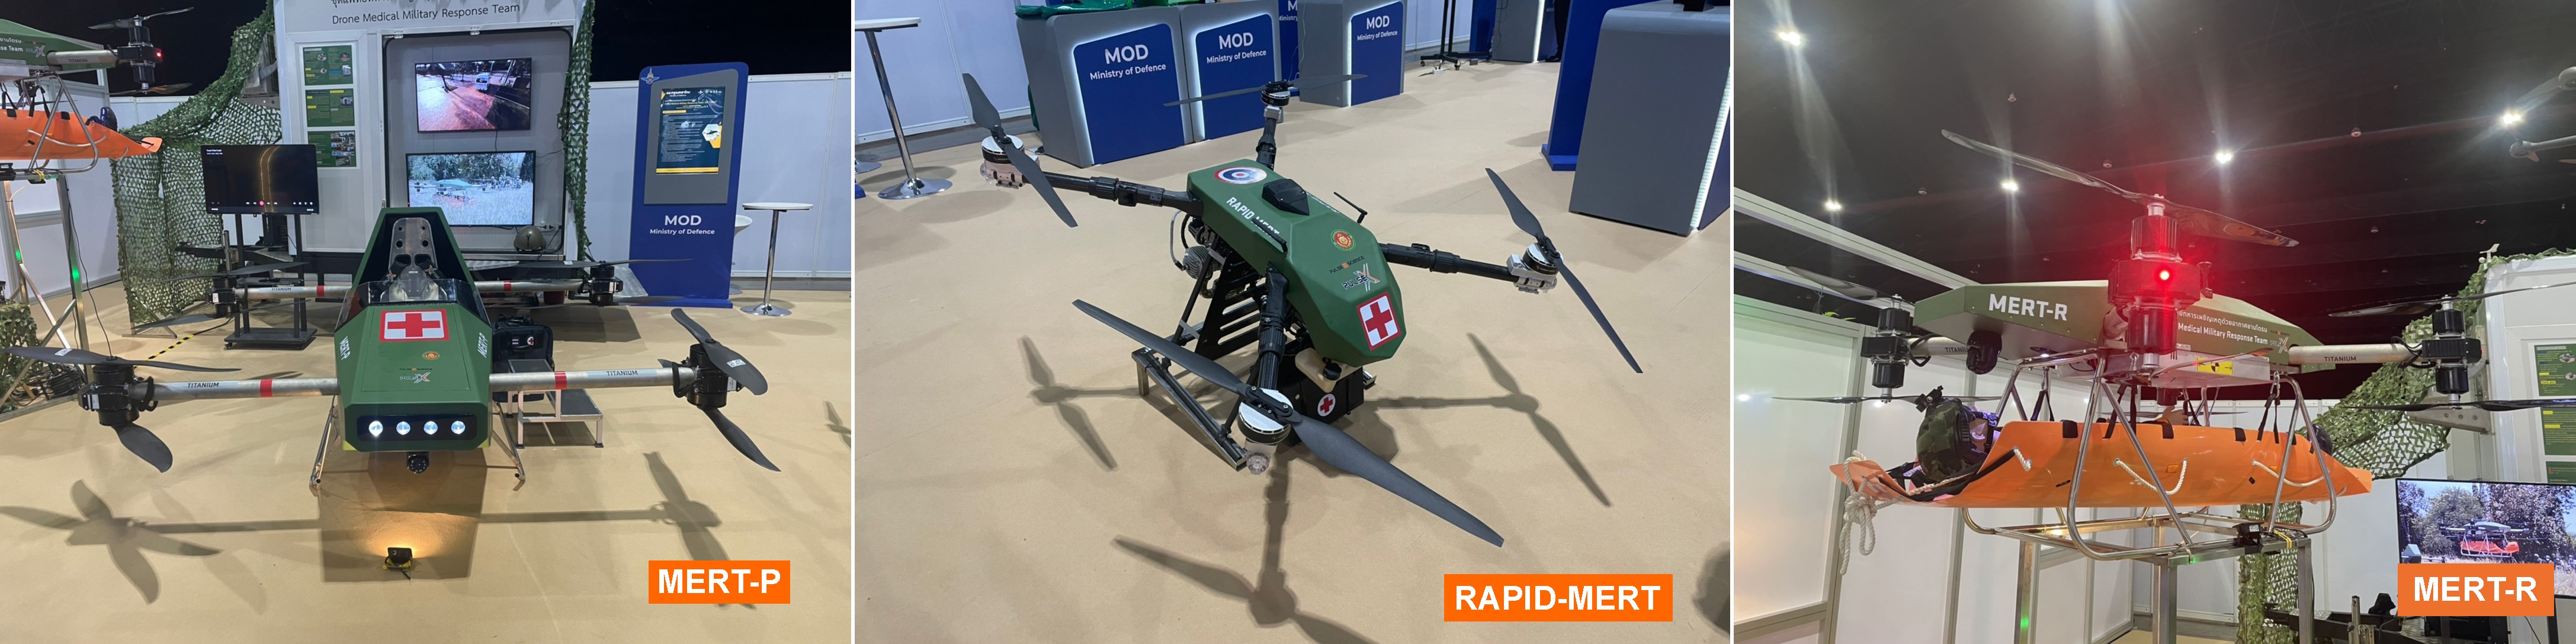 MERT-Quadcopter für den Transport von Verwundeten und medizinischer Ausrüstung werden vorgestellt